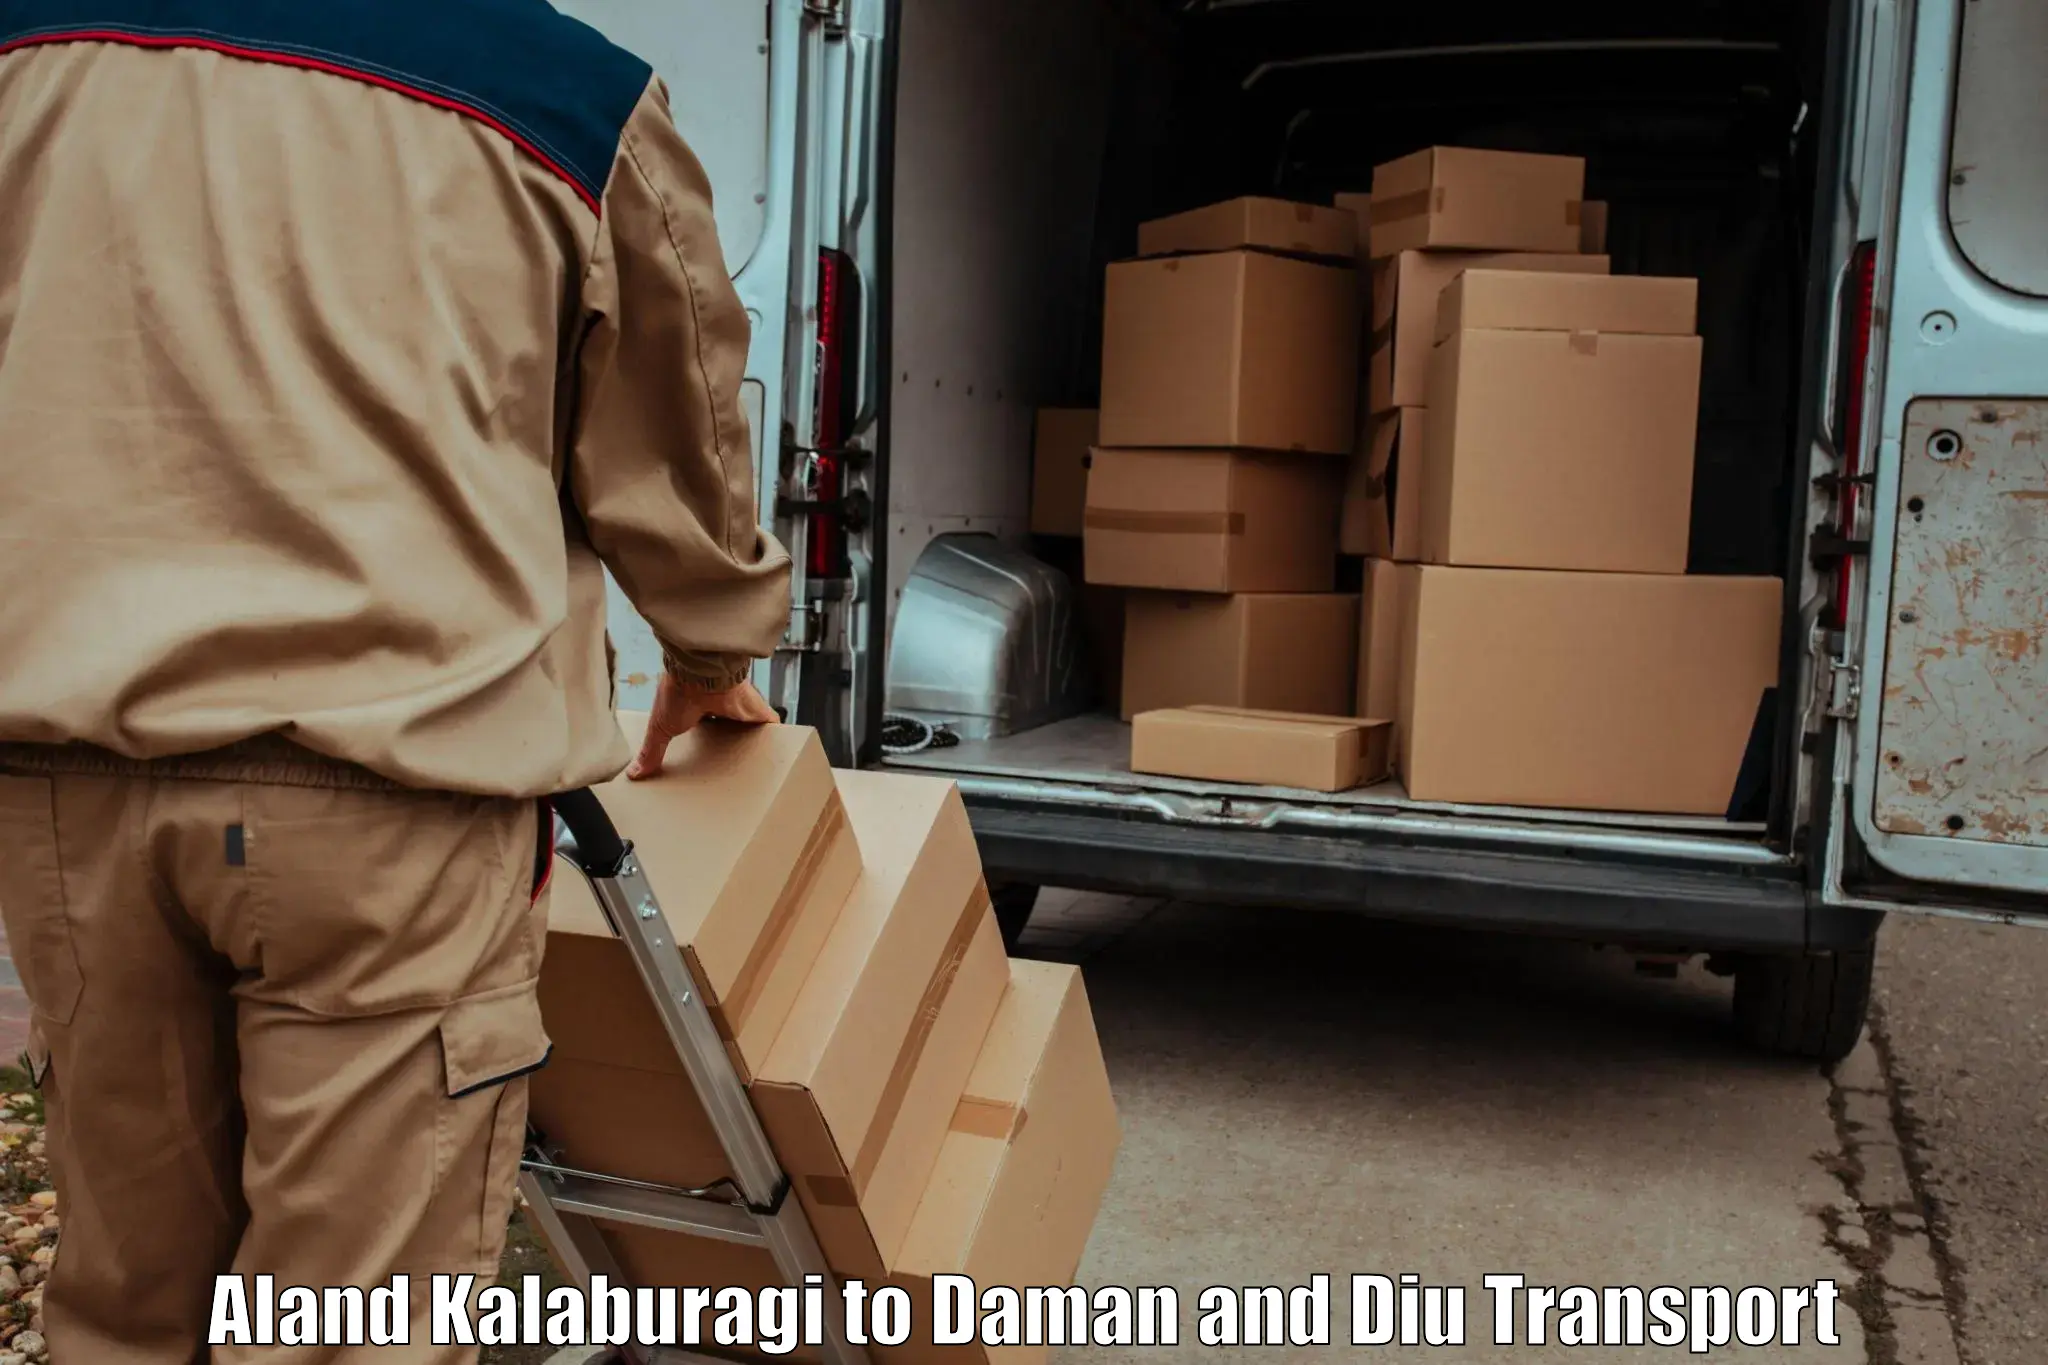 Transport in sharing Aland Kalaburagi to Daman and Diu